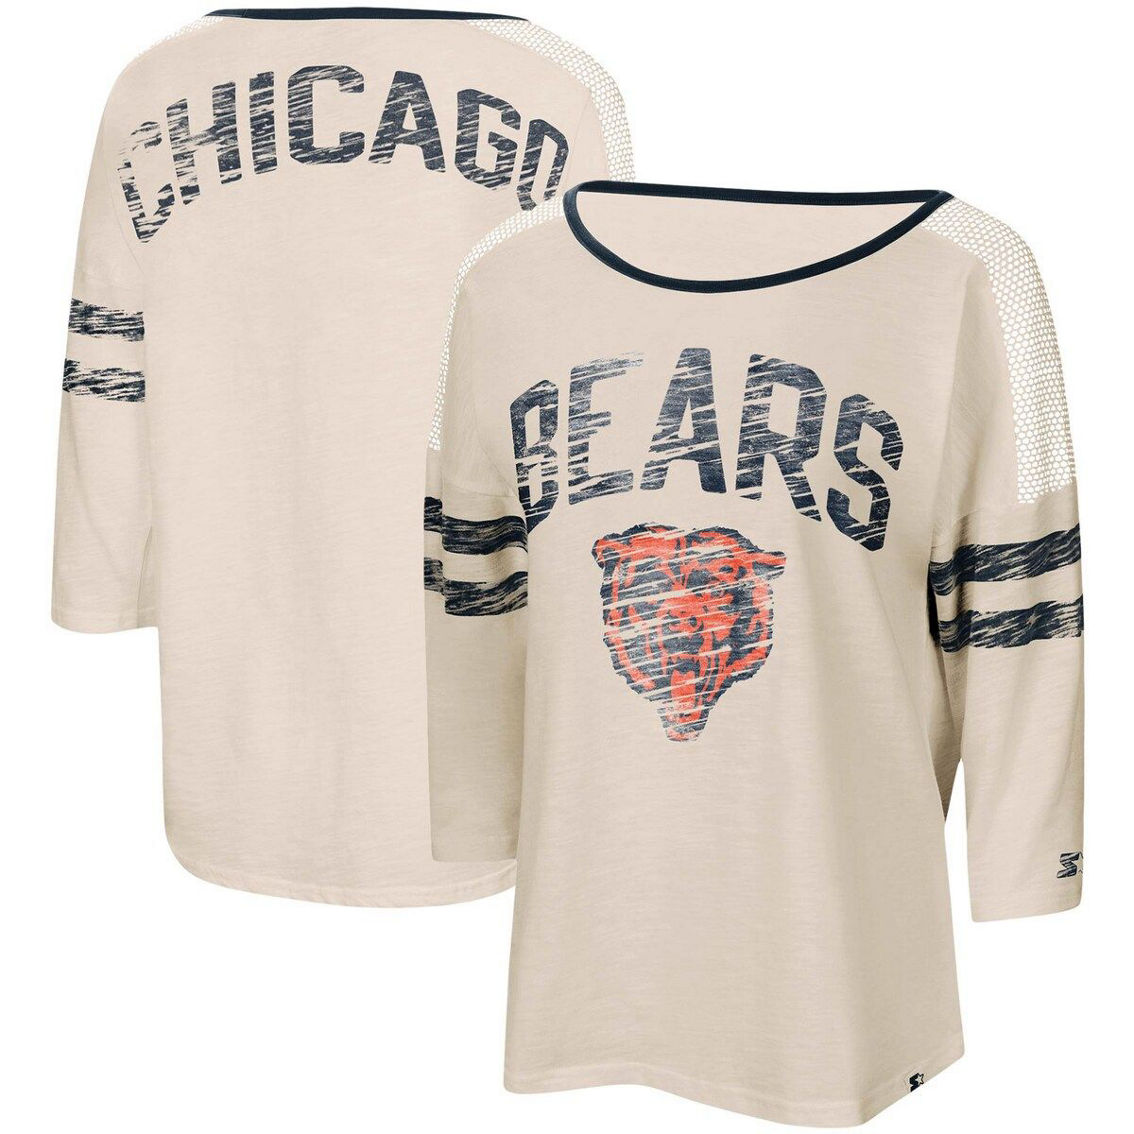 Starter Women's White/Navy Chicago Bears Highlight Scoop Neck Historic Logo 3/4 Sleeve T-Shirt - Image 2 of 4